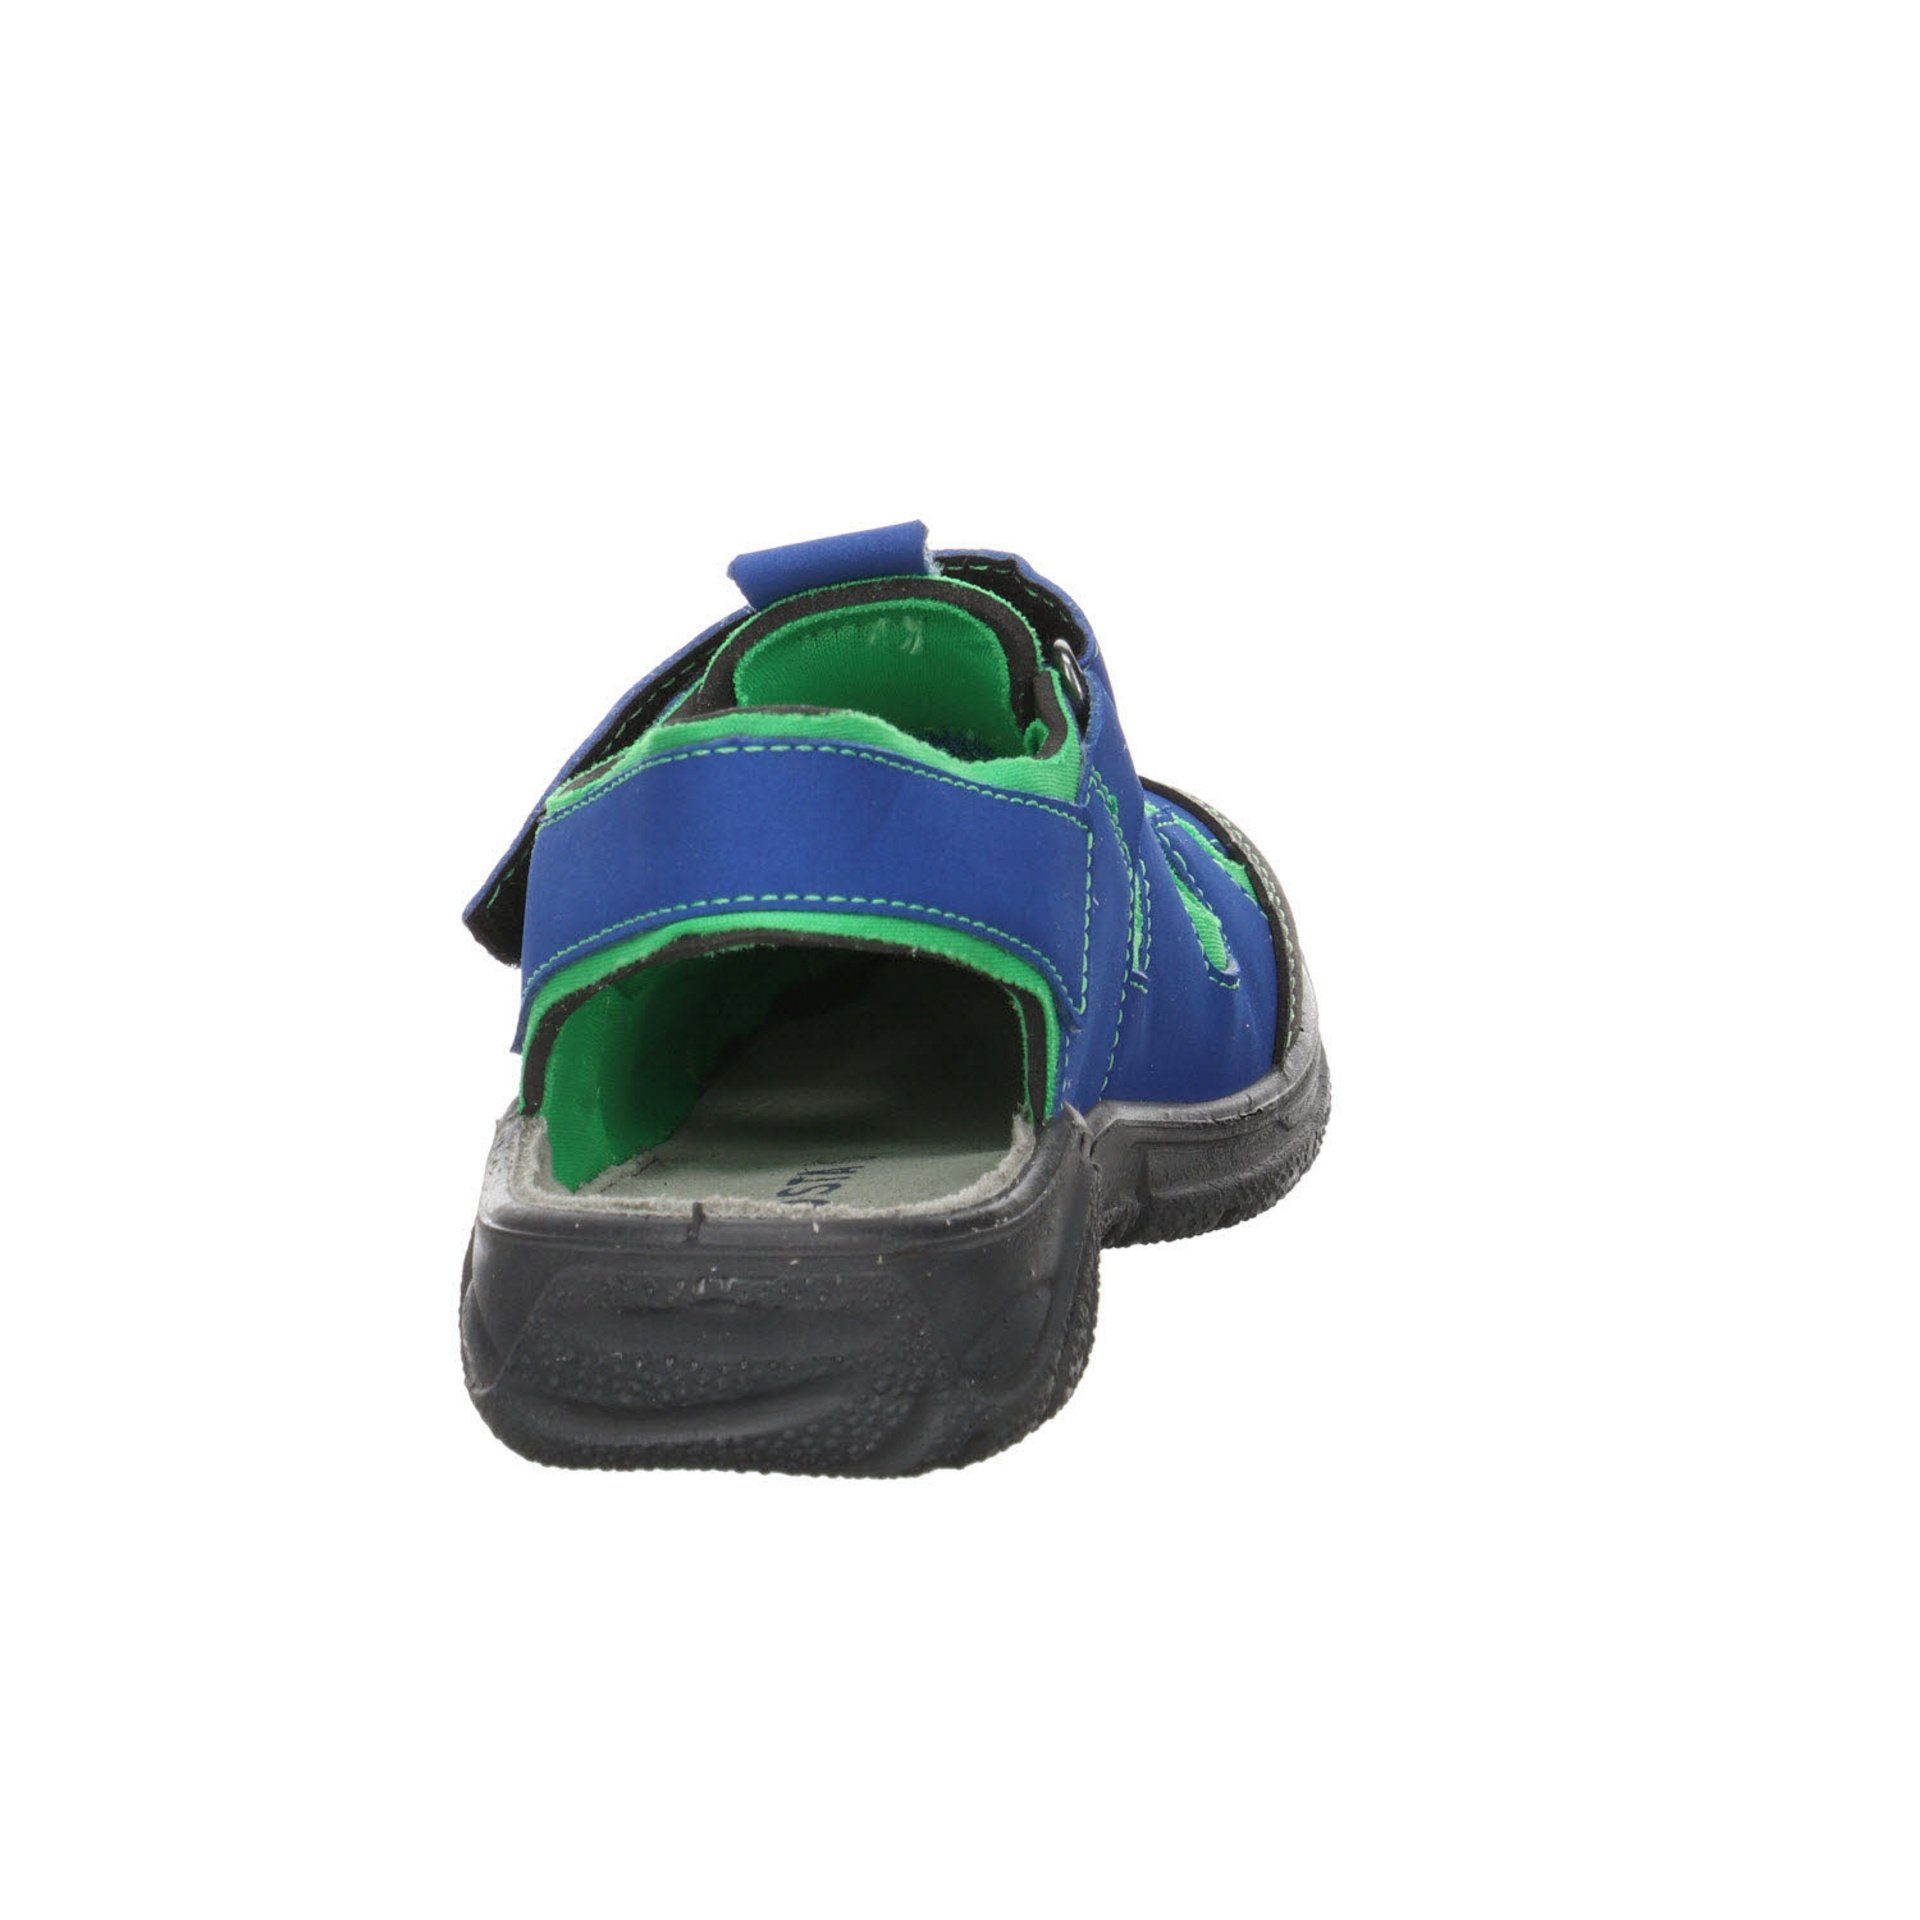 Sandalen blau Schuhe Synthetikkombination Gerald Sandale Outdoorsandale sonstige Ricosta Jungen Kombin